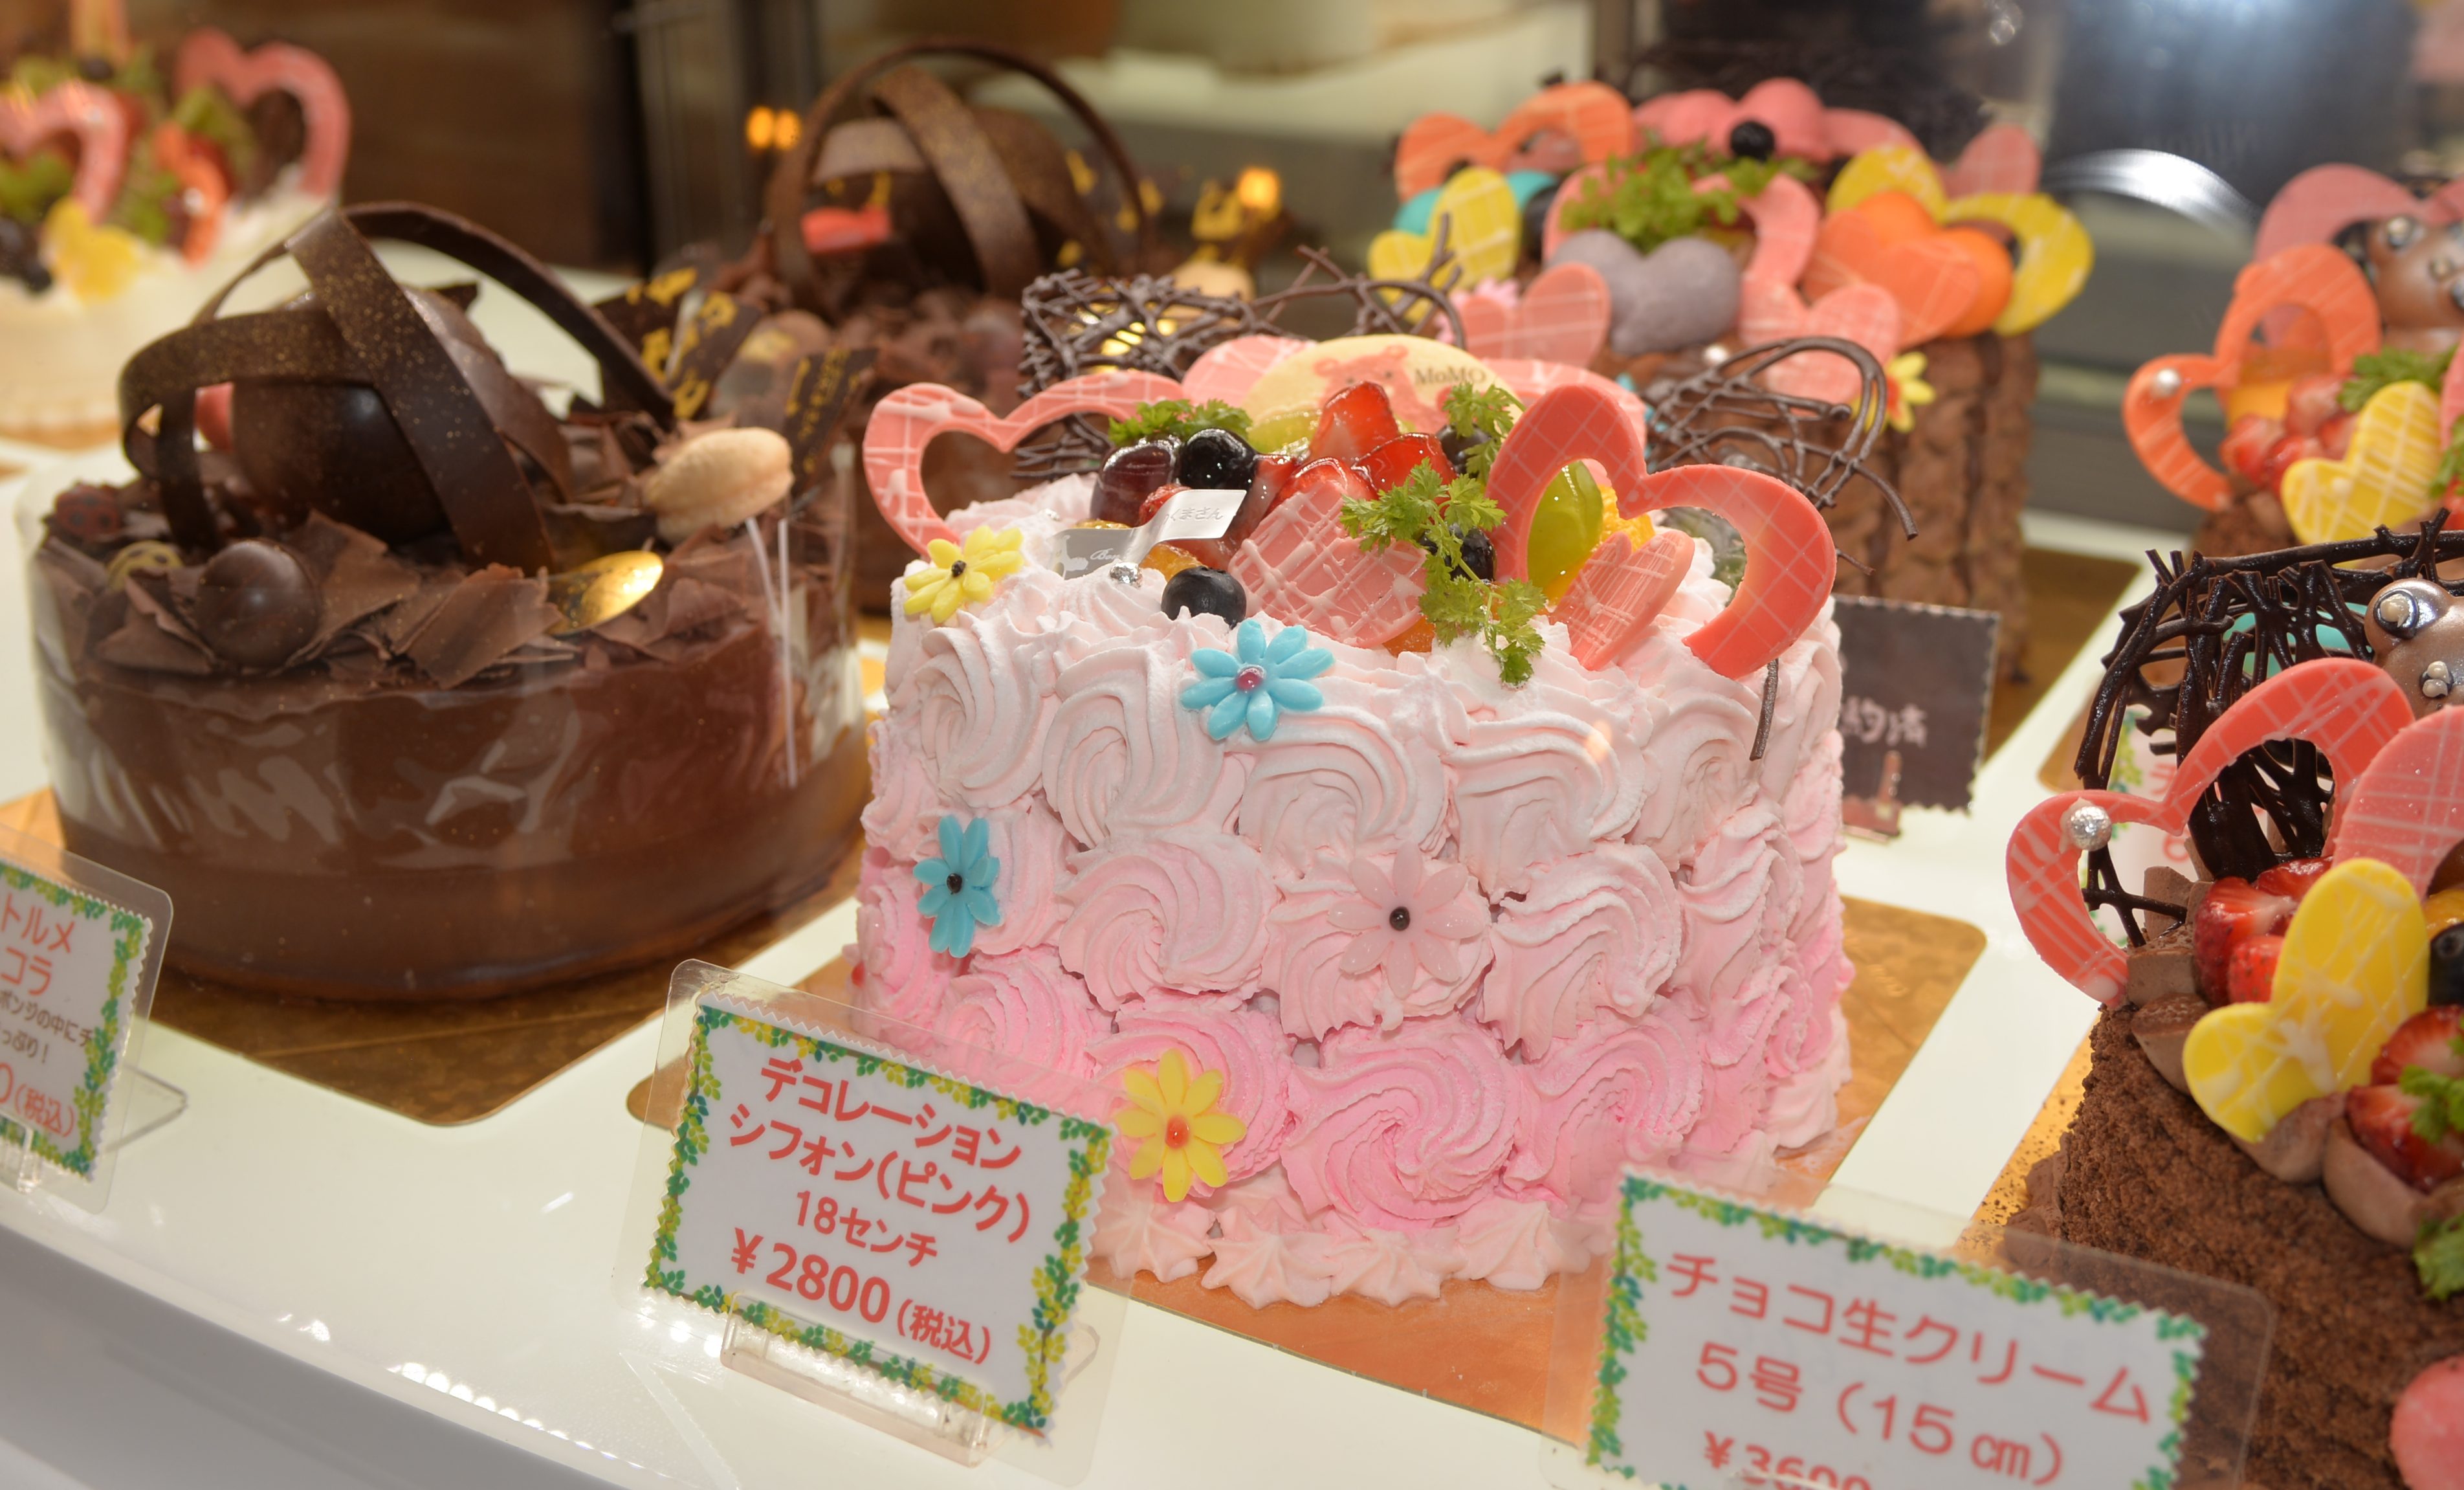 ７月２７日 はプレミアムフライデーです 熊本 光の森のケーキと焼き菓子のお店 森のくまさん ボンガトー